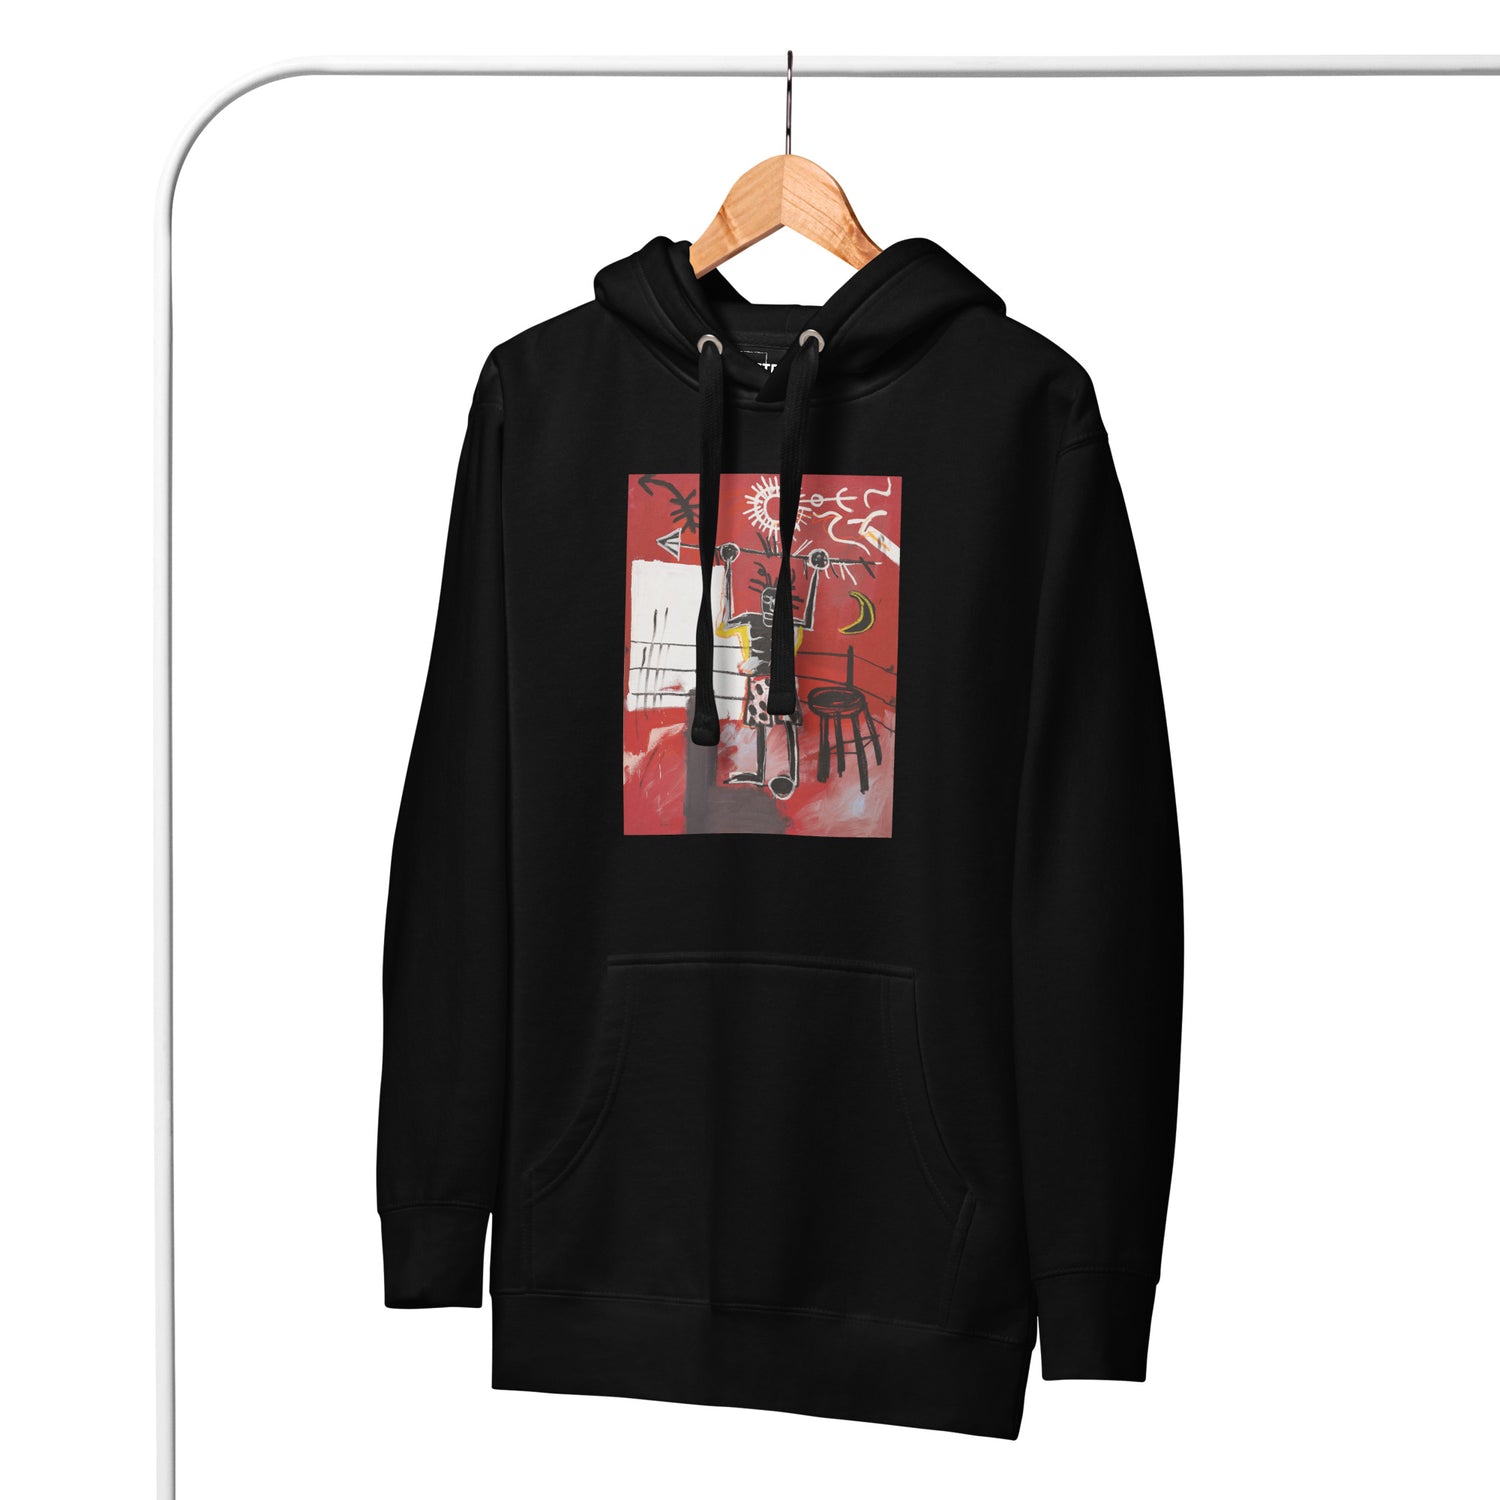 Jean-Michel Basquiat "The Ring" Artwork Printed Premium Streetwear Sweatshirt Hoodie Black